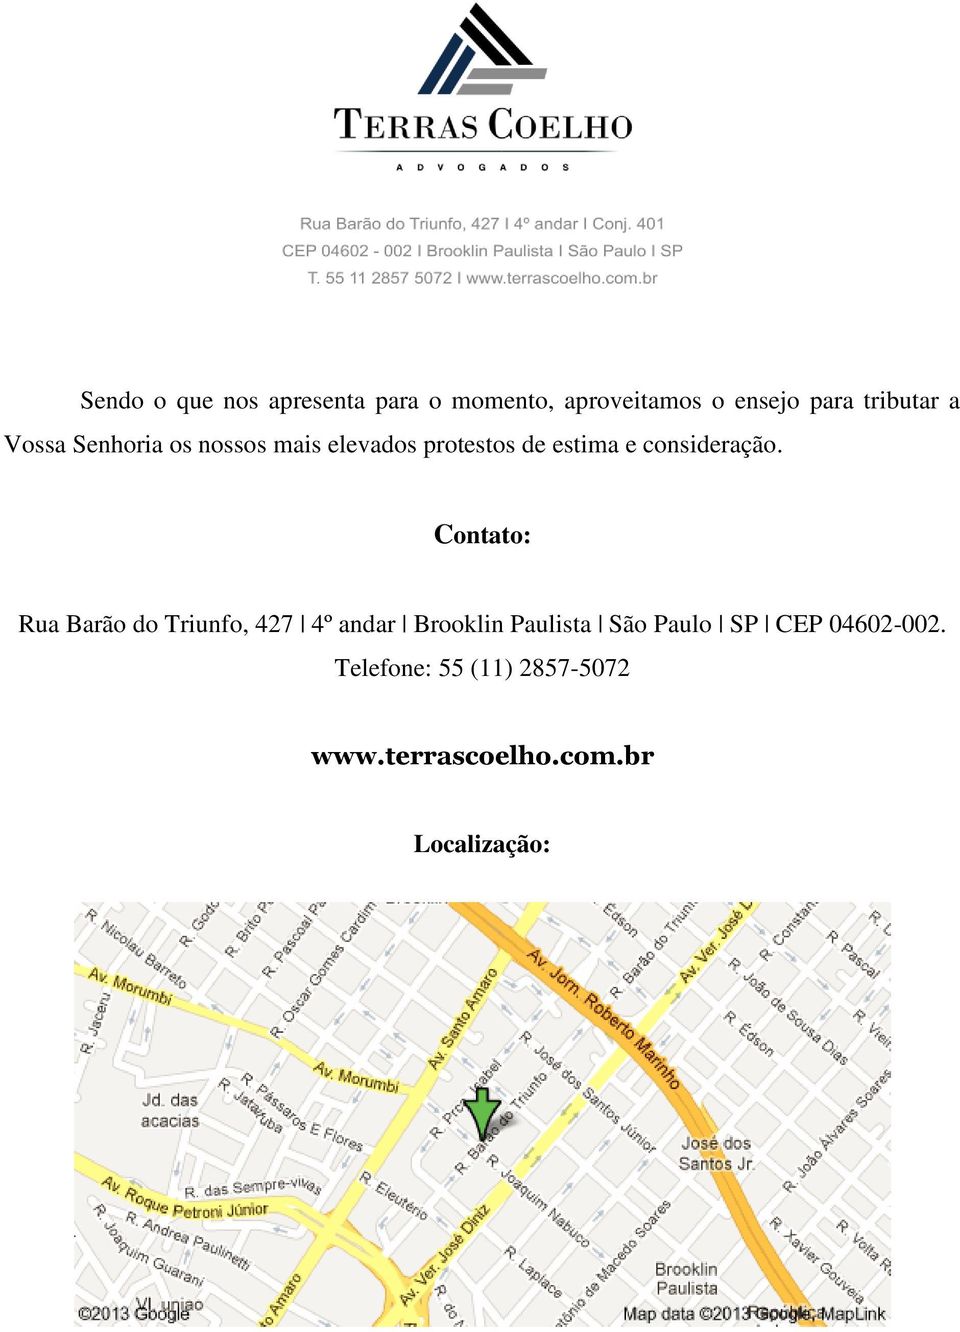 Contato: Rua Barão do Triunfo, 427 4º andar Brooklin Paulista São Paulo SP